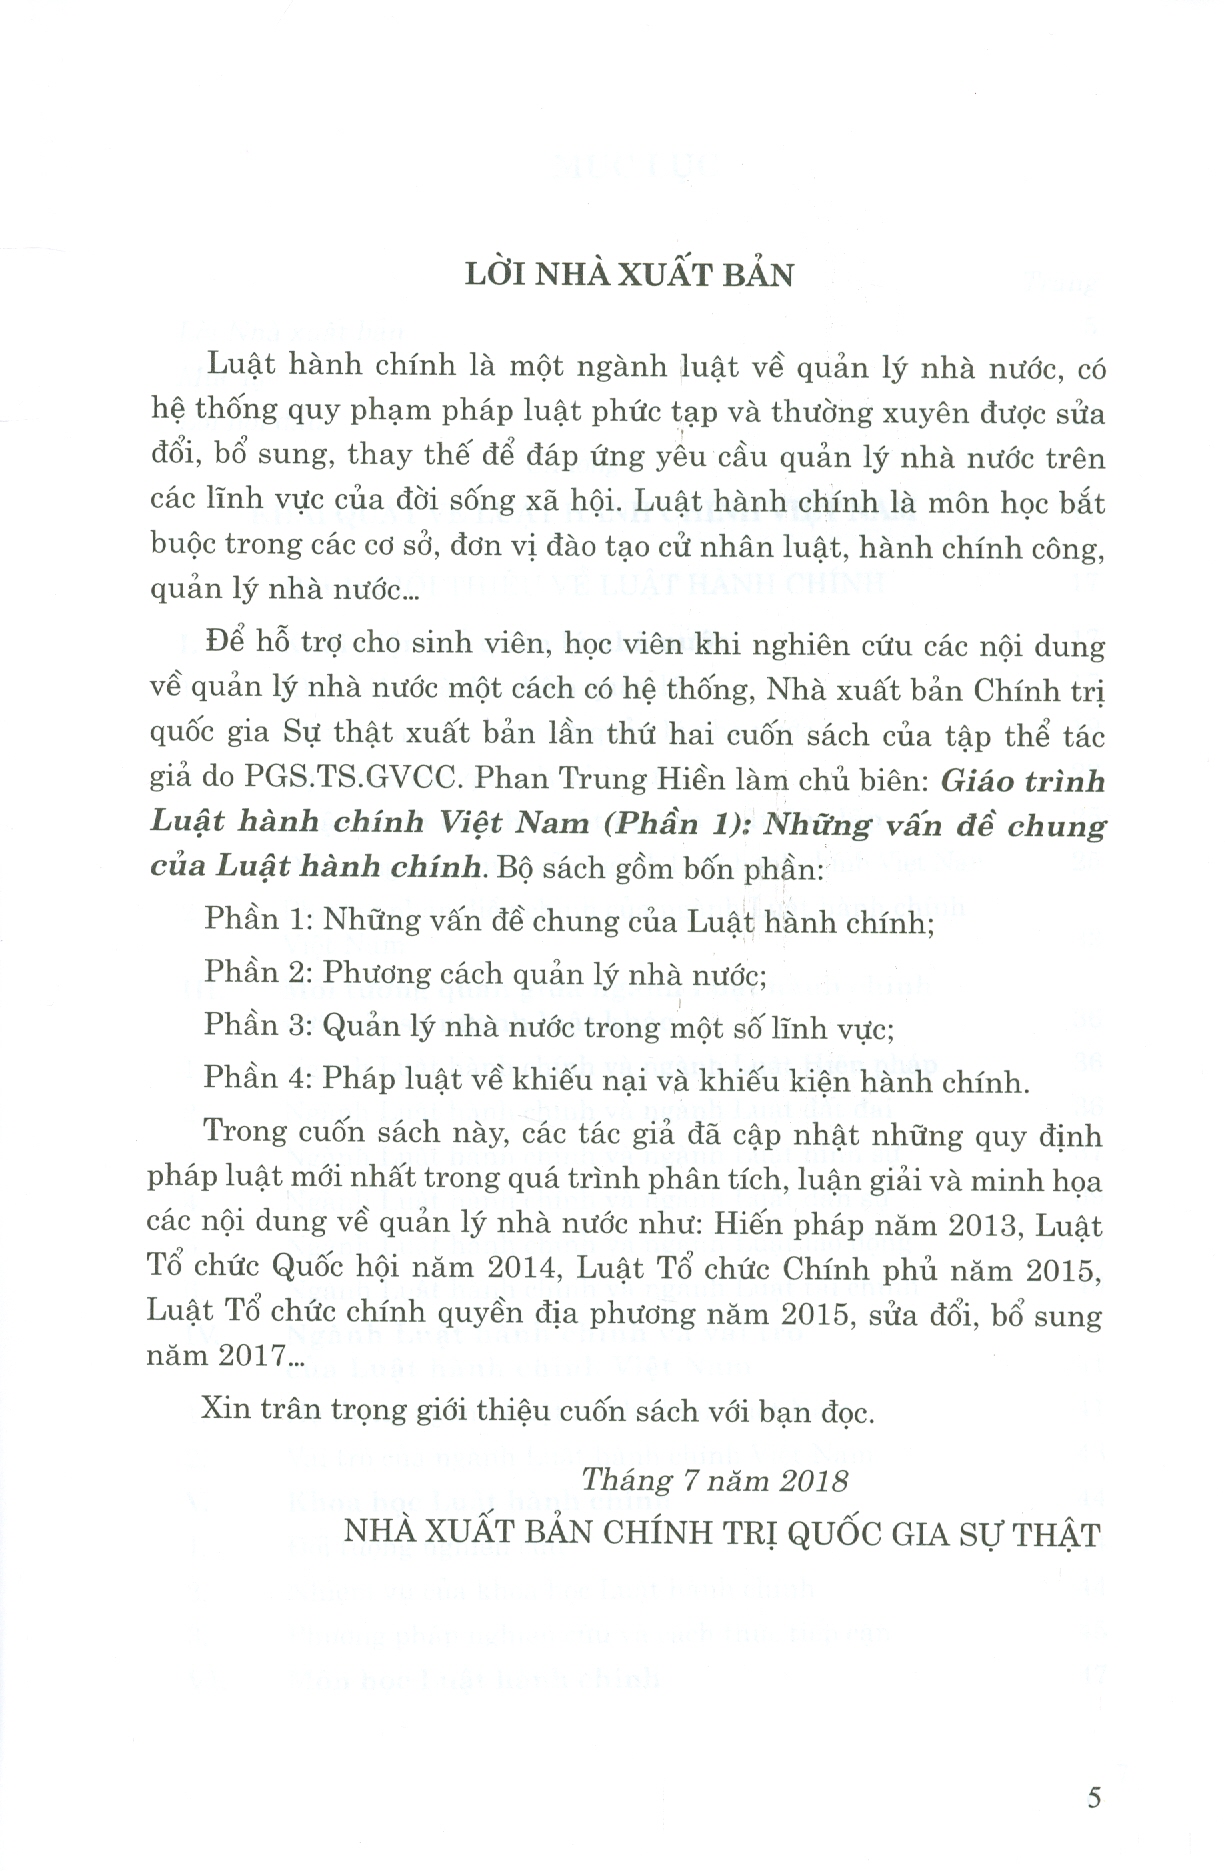 Giáo Trình Luật Hành Chính Việt Nam (Phần 1) - Những Vấn Đề Chung Của Luật Hành Chính (Xuất bản lần thứ hai)